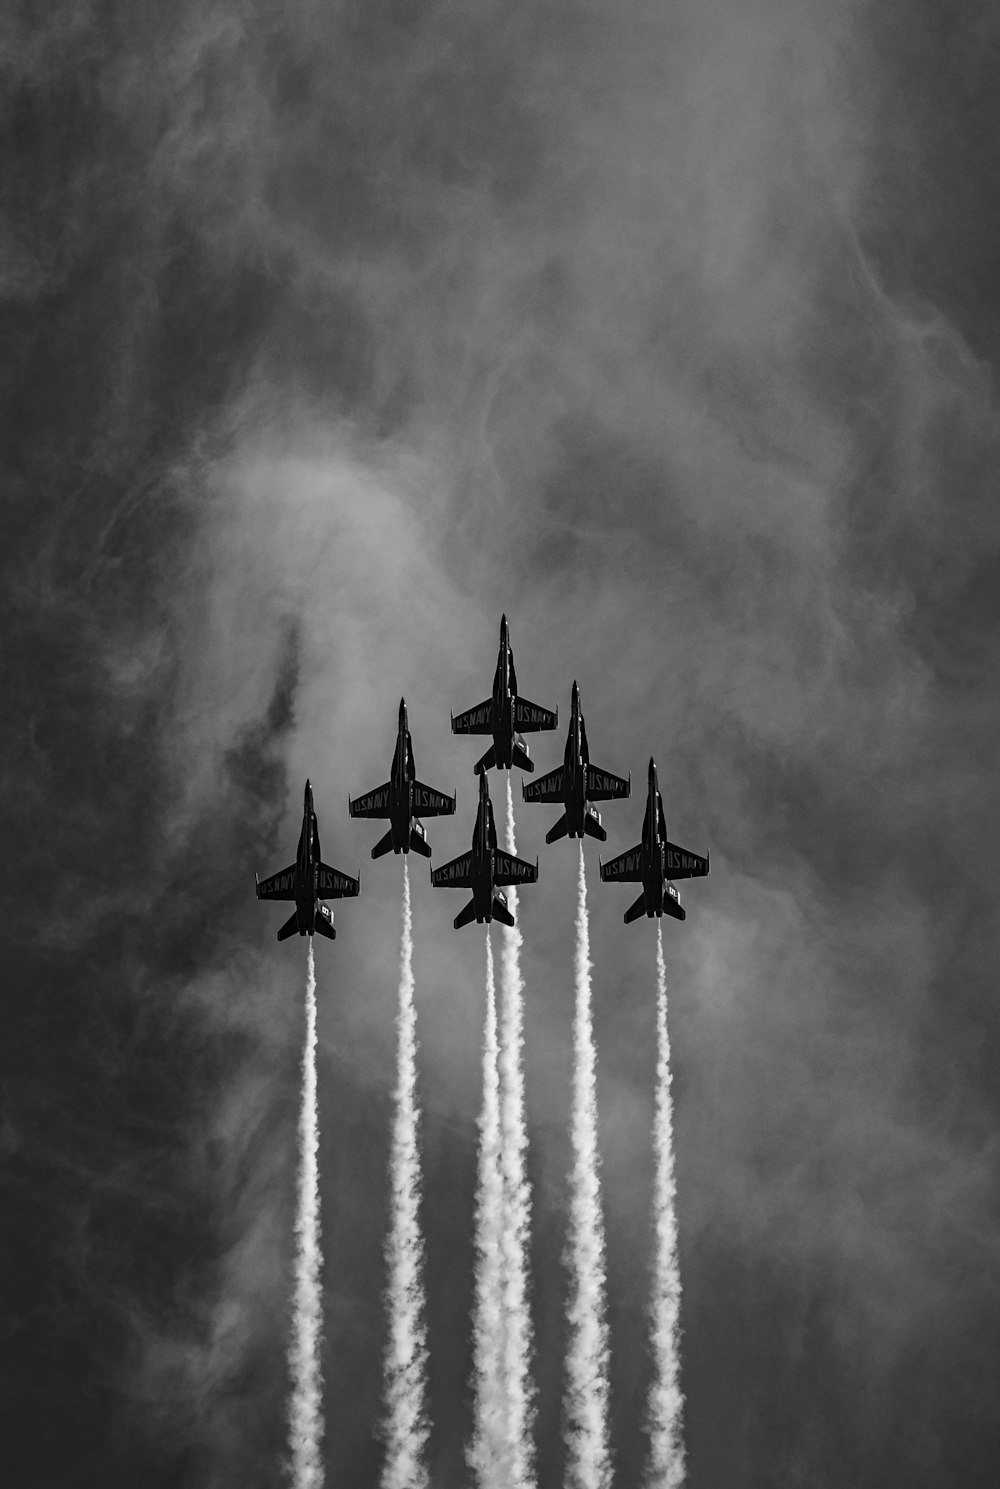 quatro aviões de combate em fotografia em tons de cinza